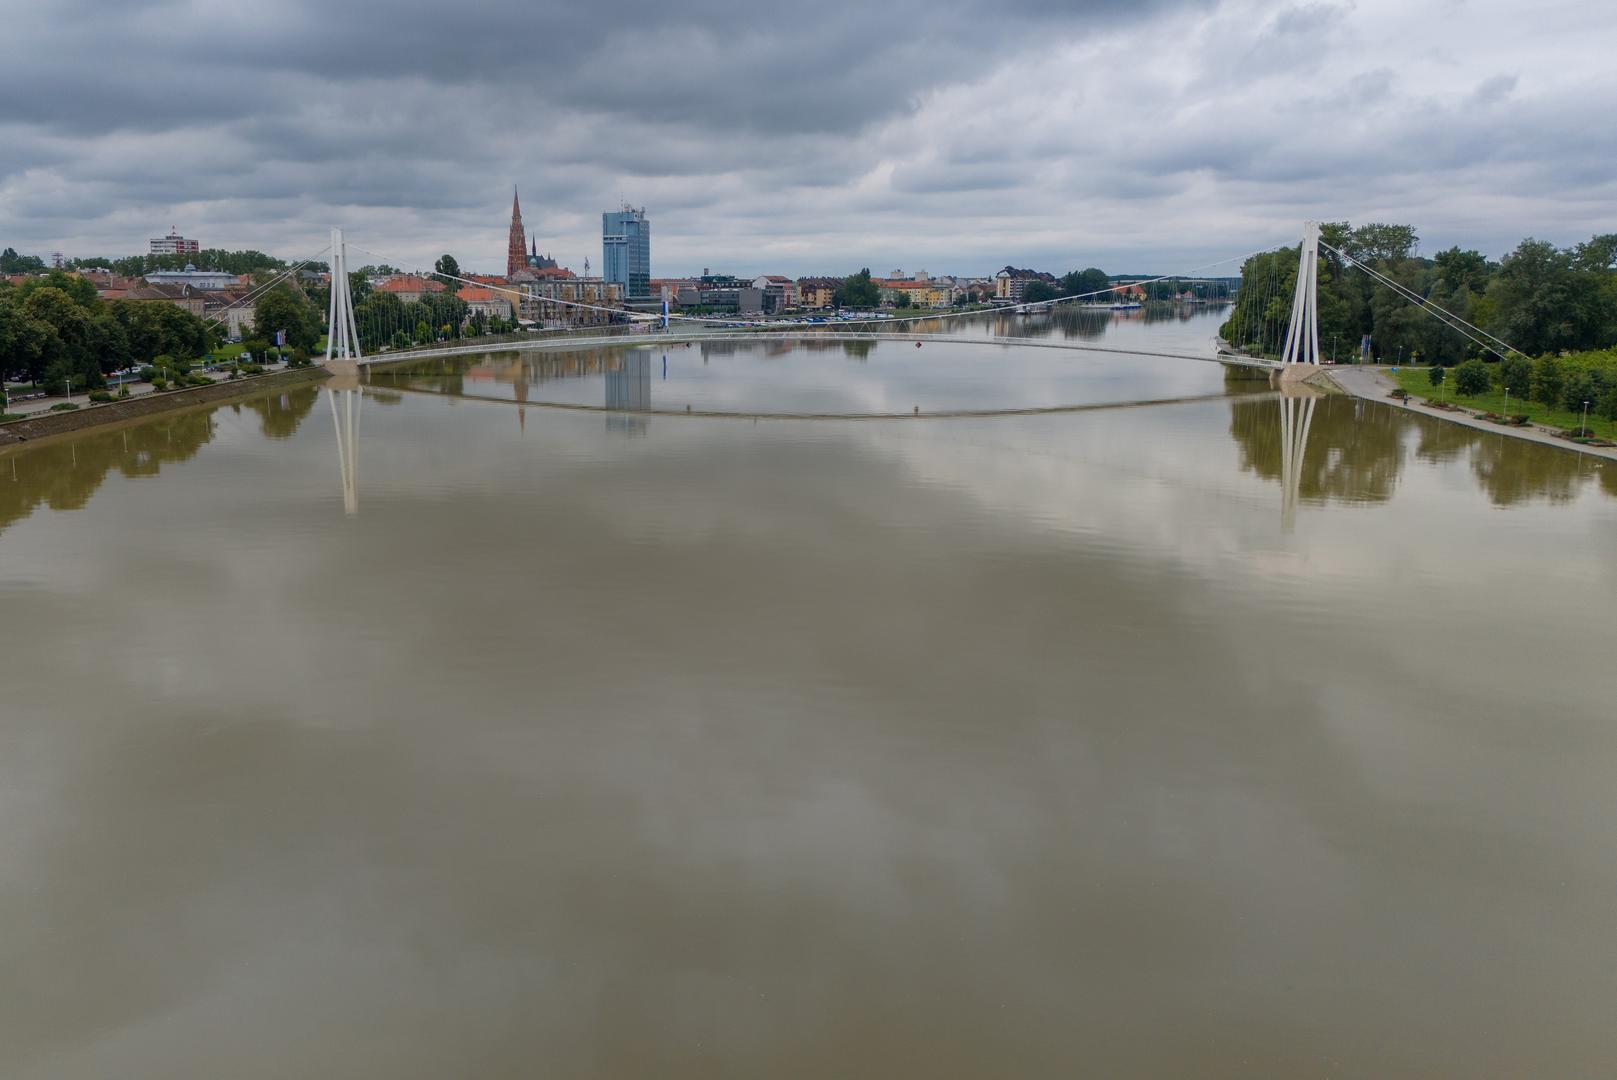 Načelnik stožera župan Mato Lukić izjavio je novinarima kako se, zbog povećanja vodostaja Dunava, događa uspor toka rijeke Drave, o čemu ovisi i vodostaj u Osijeku, a što će utjecati i na pritoke Drave, koji je u blagom porastu. "Oštećenja na nasipima uslijed ovog vodenog vala i pritiska vode nije bilo, niti se očekuju. Manja oštećenja, koja su bila uočena prije dolaska vodenog vala su sanirana ali su sve službe preventivno na terenu, i pomno prate situaciju", rekao je Lukić.